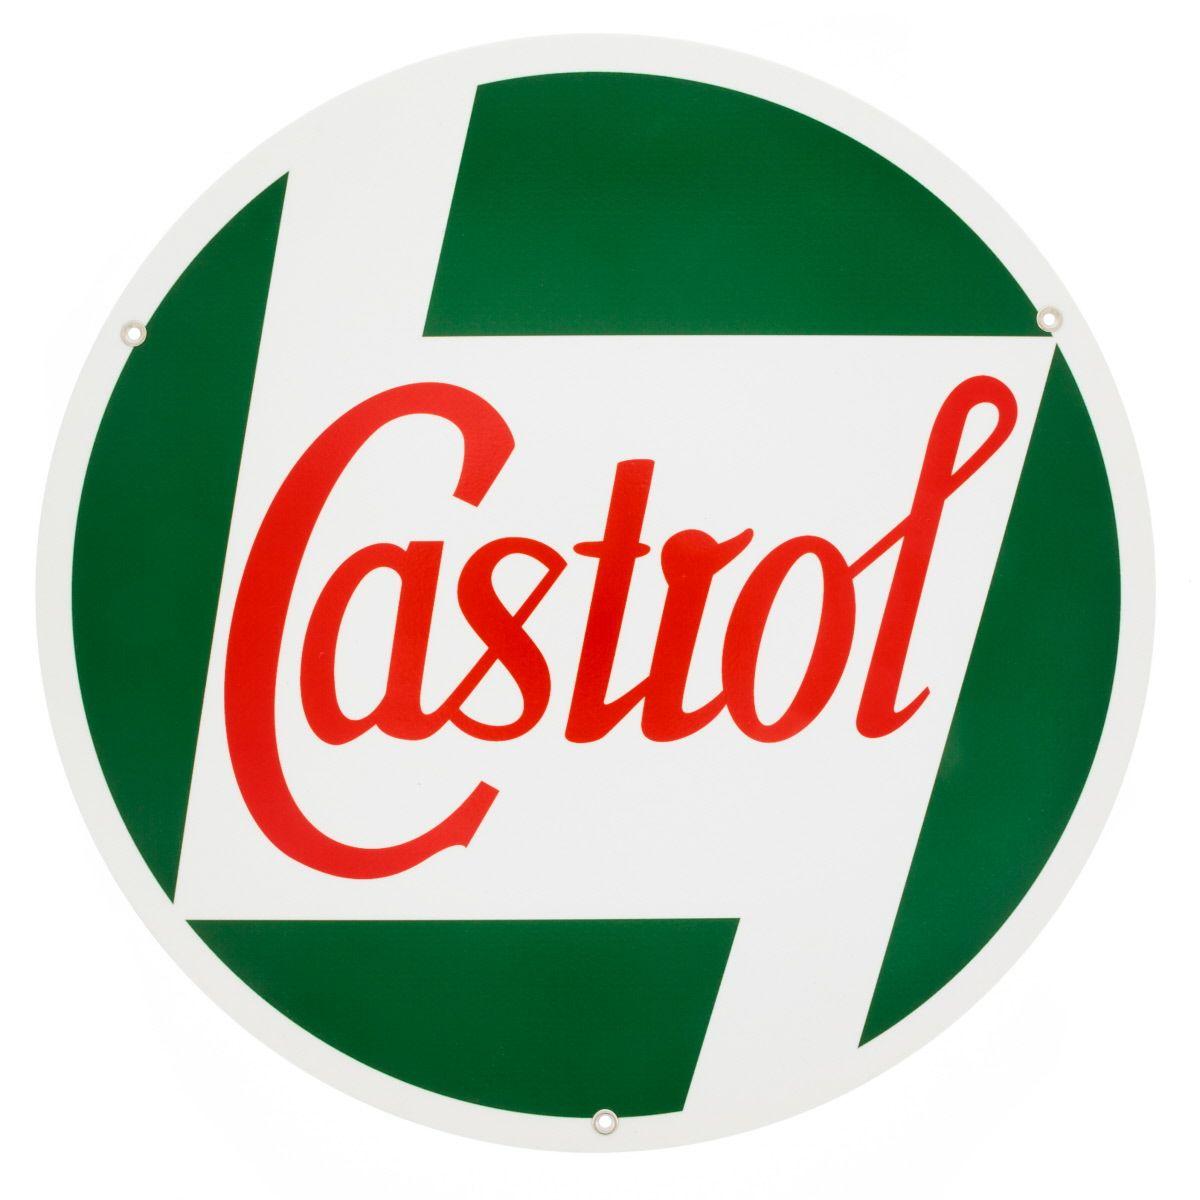 Castrol Logo - Castrol Oil Logo Vintage Style Garage Sign_D at Retro Planet